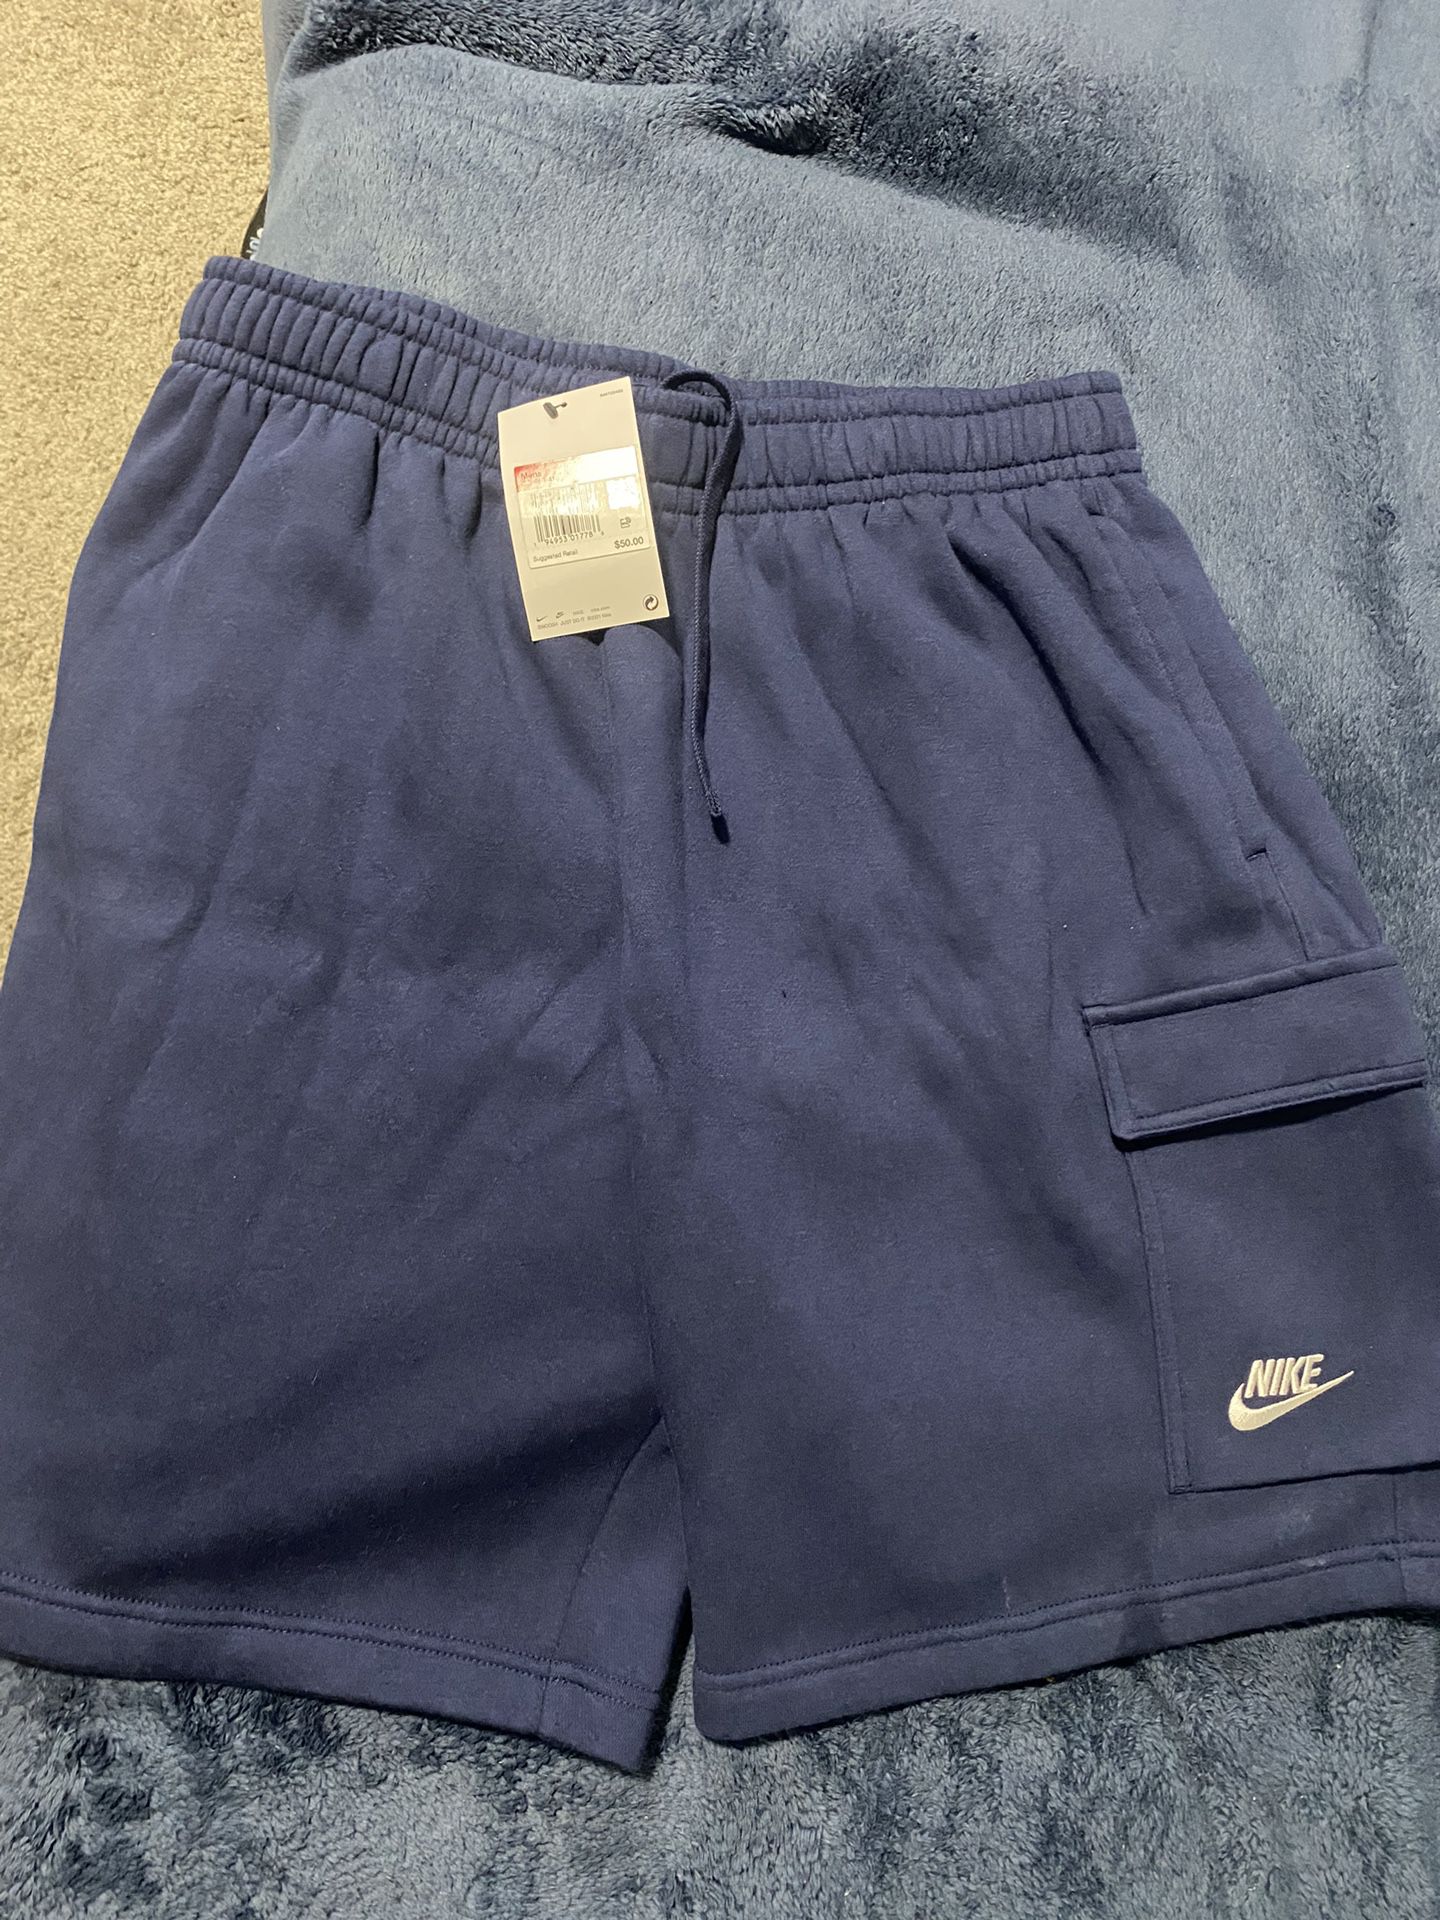 Nike Shorts Size Large 